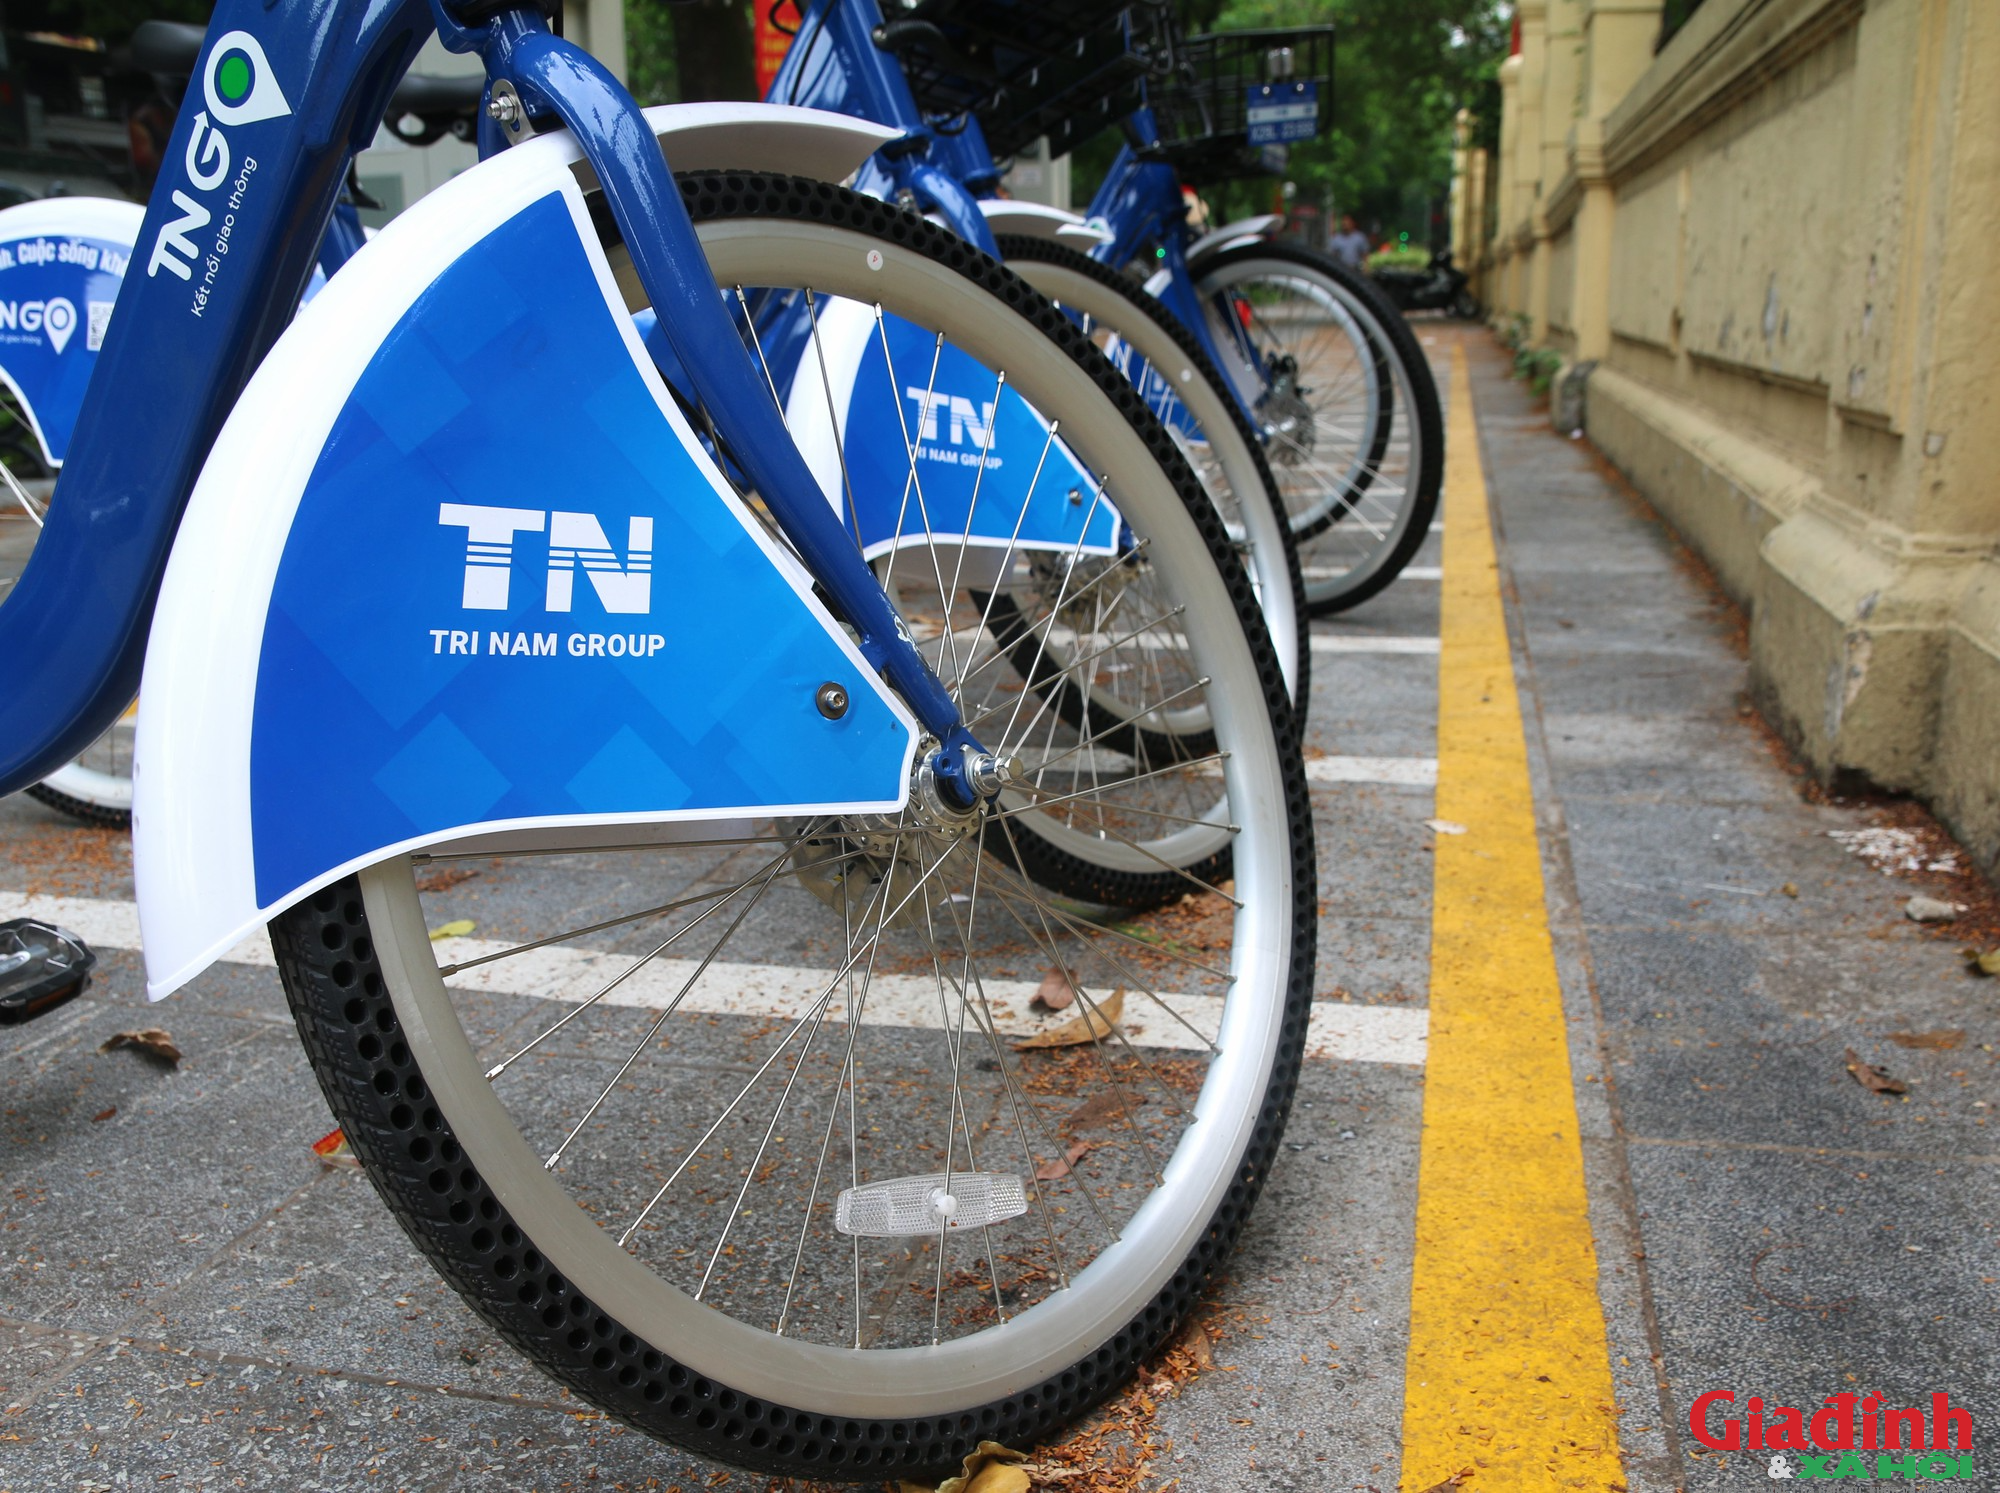 Dịch vụ xe đạp công cộng được triển khai tại Hà Nội và kỳ vọng thay đổi thói quen tham gia giao thông - Ảnh 6.